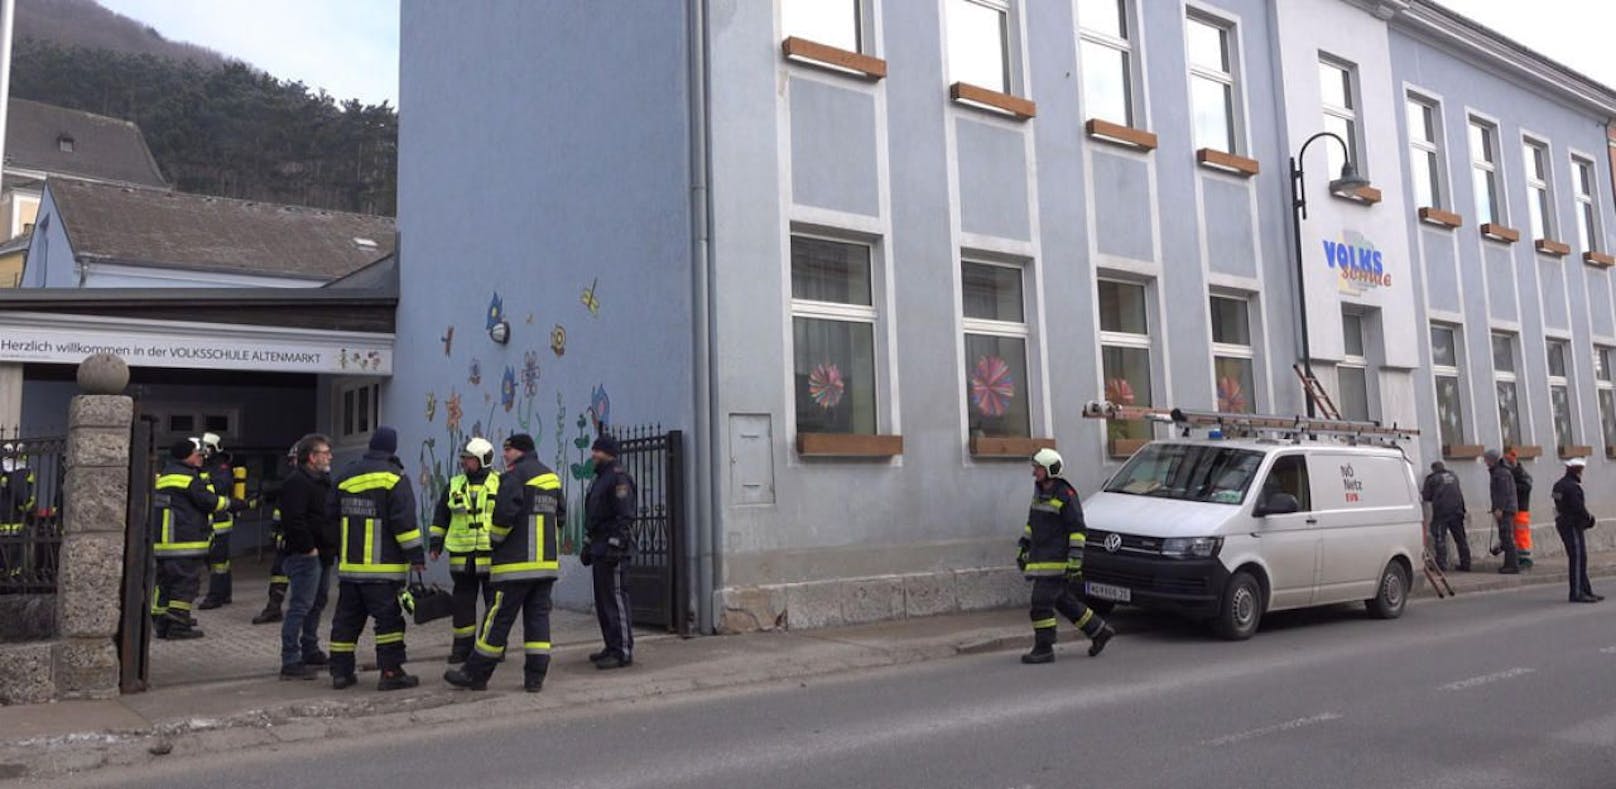 Volksschule in Altenmarkt nach Gasalarm evakuiert